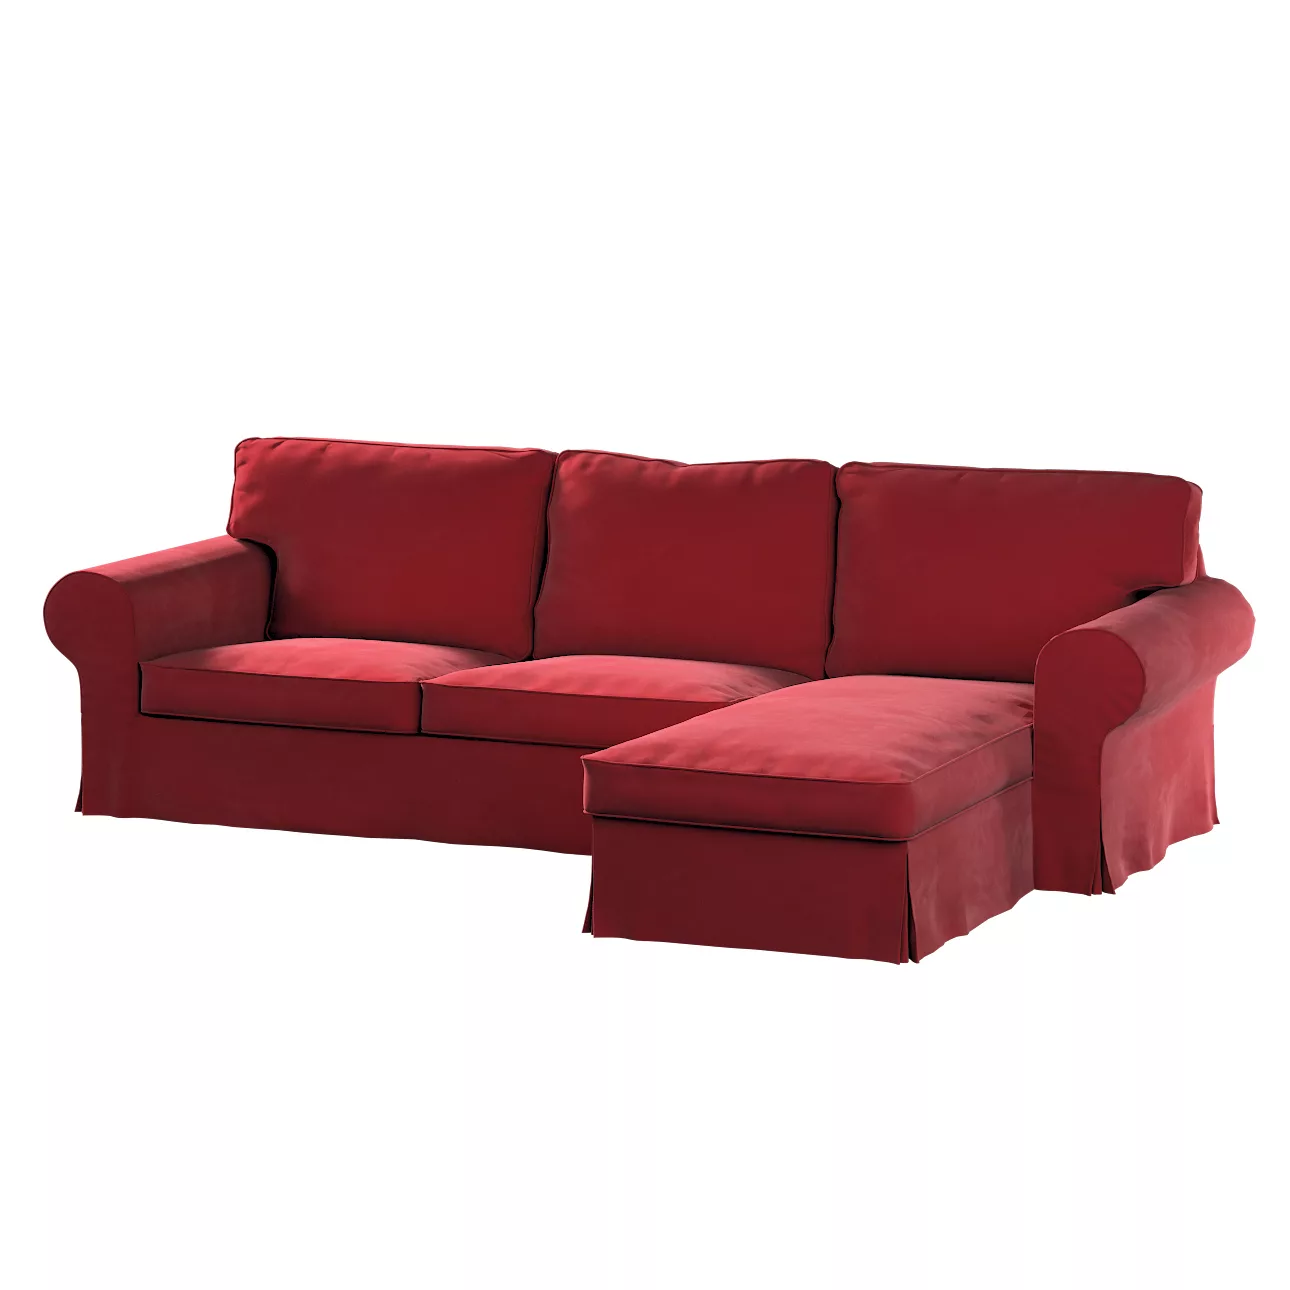 Bezug für Ektorp 2-Sitzer Sofa mit Recamiere, rot, Ektorp 2-Sitzer Sofabezu günstig online kaufen